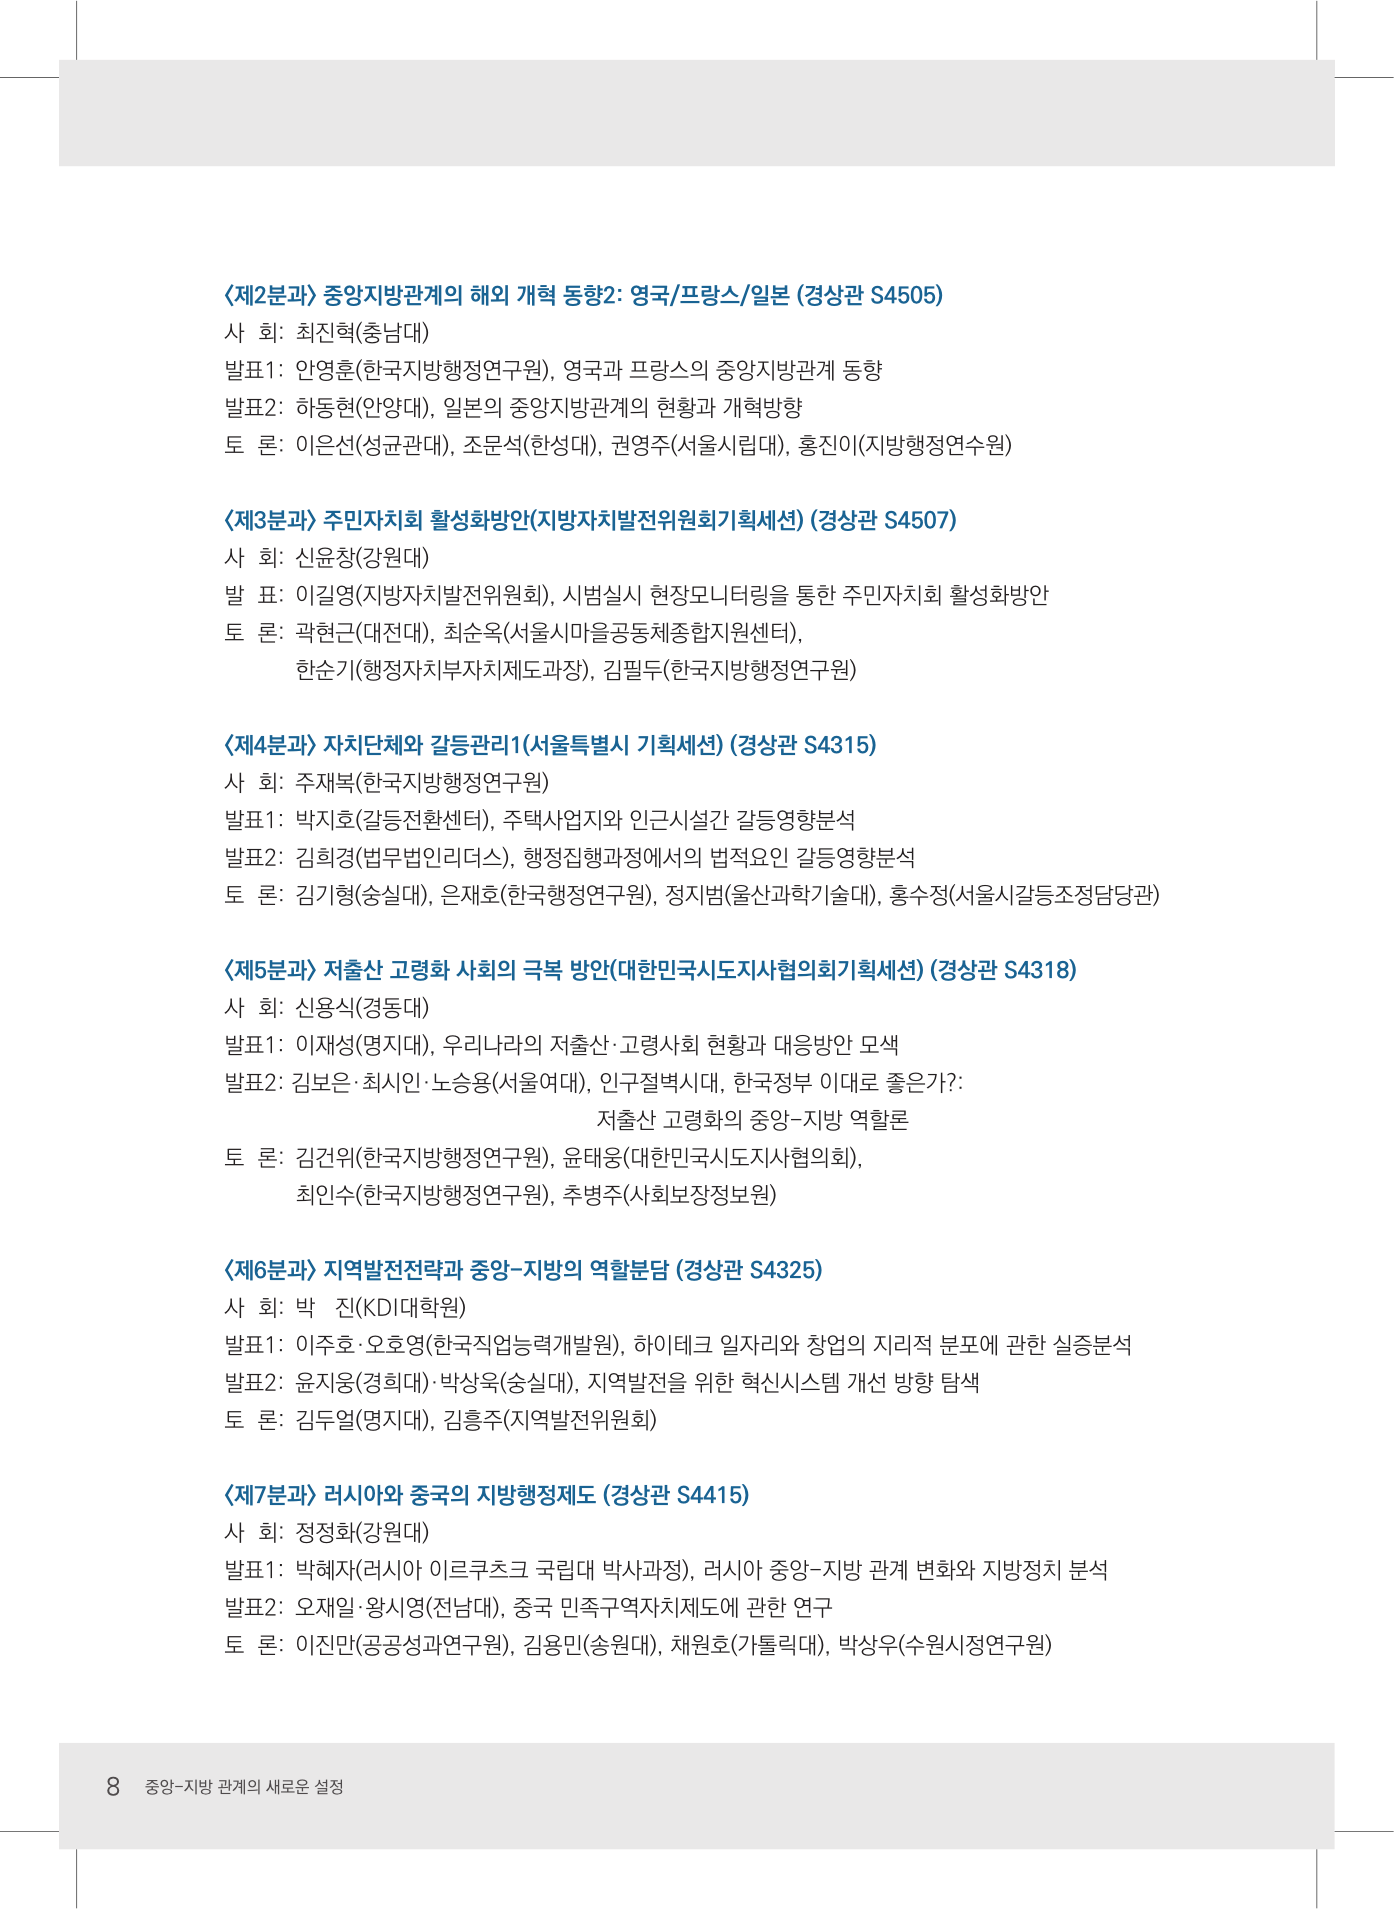 2017 한국지방자치학회 동계학술대회 초청장-08.jpg